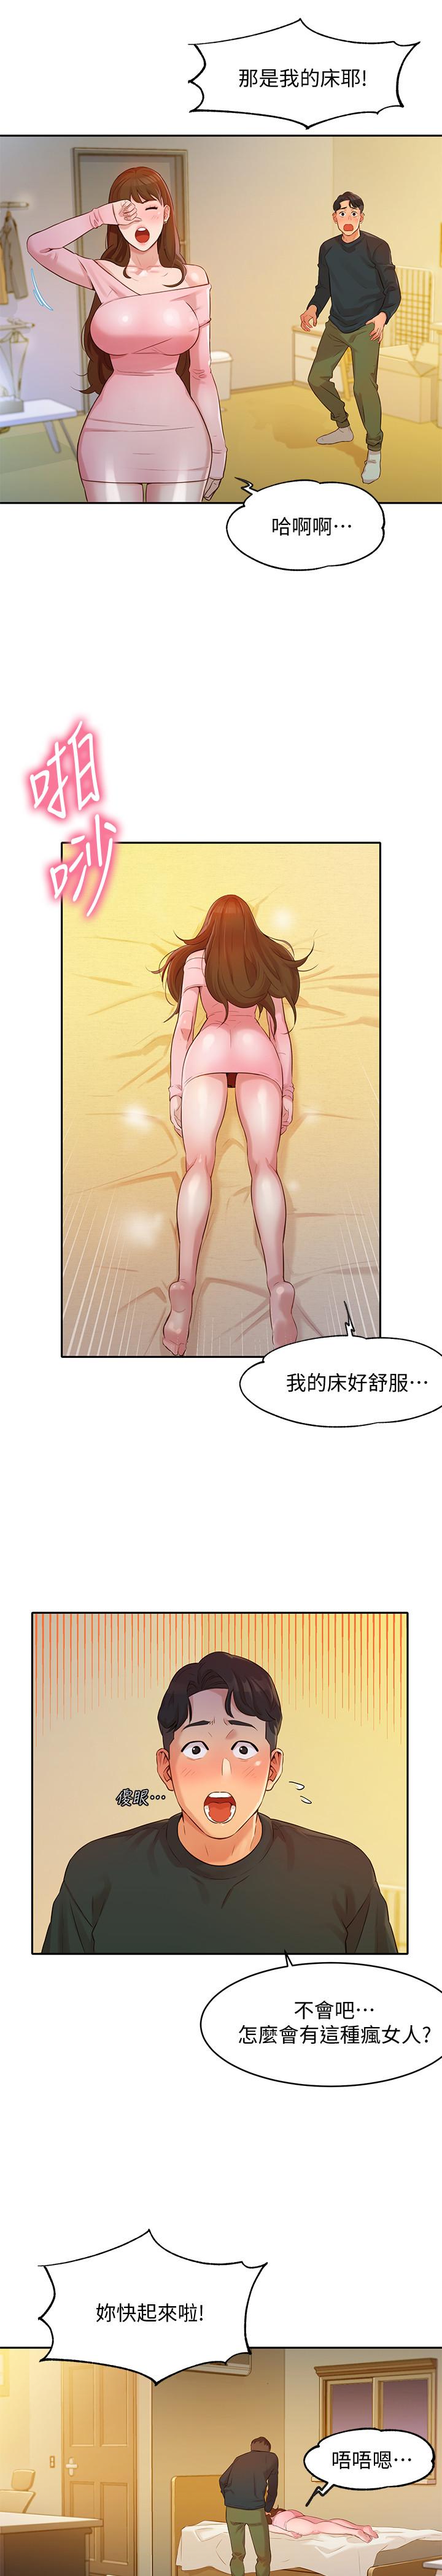 韩国污漫画 女神寫真 第2话-专业模特与众不同的姿势 13